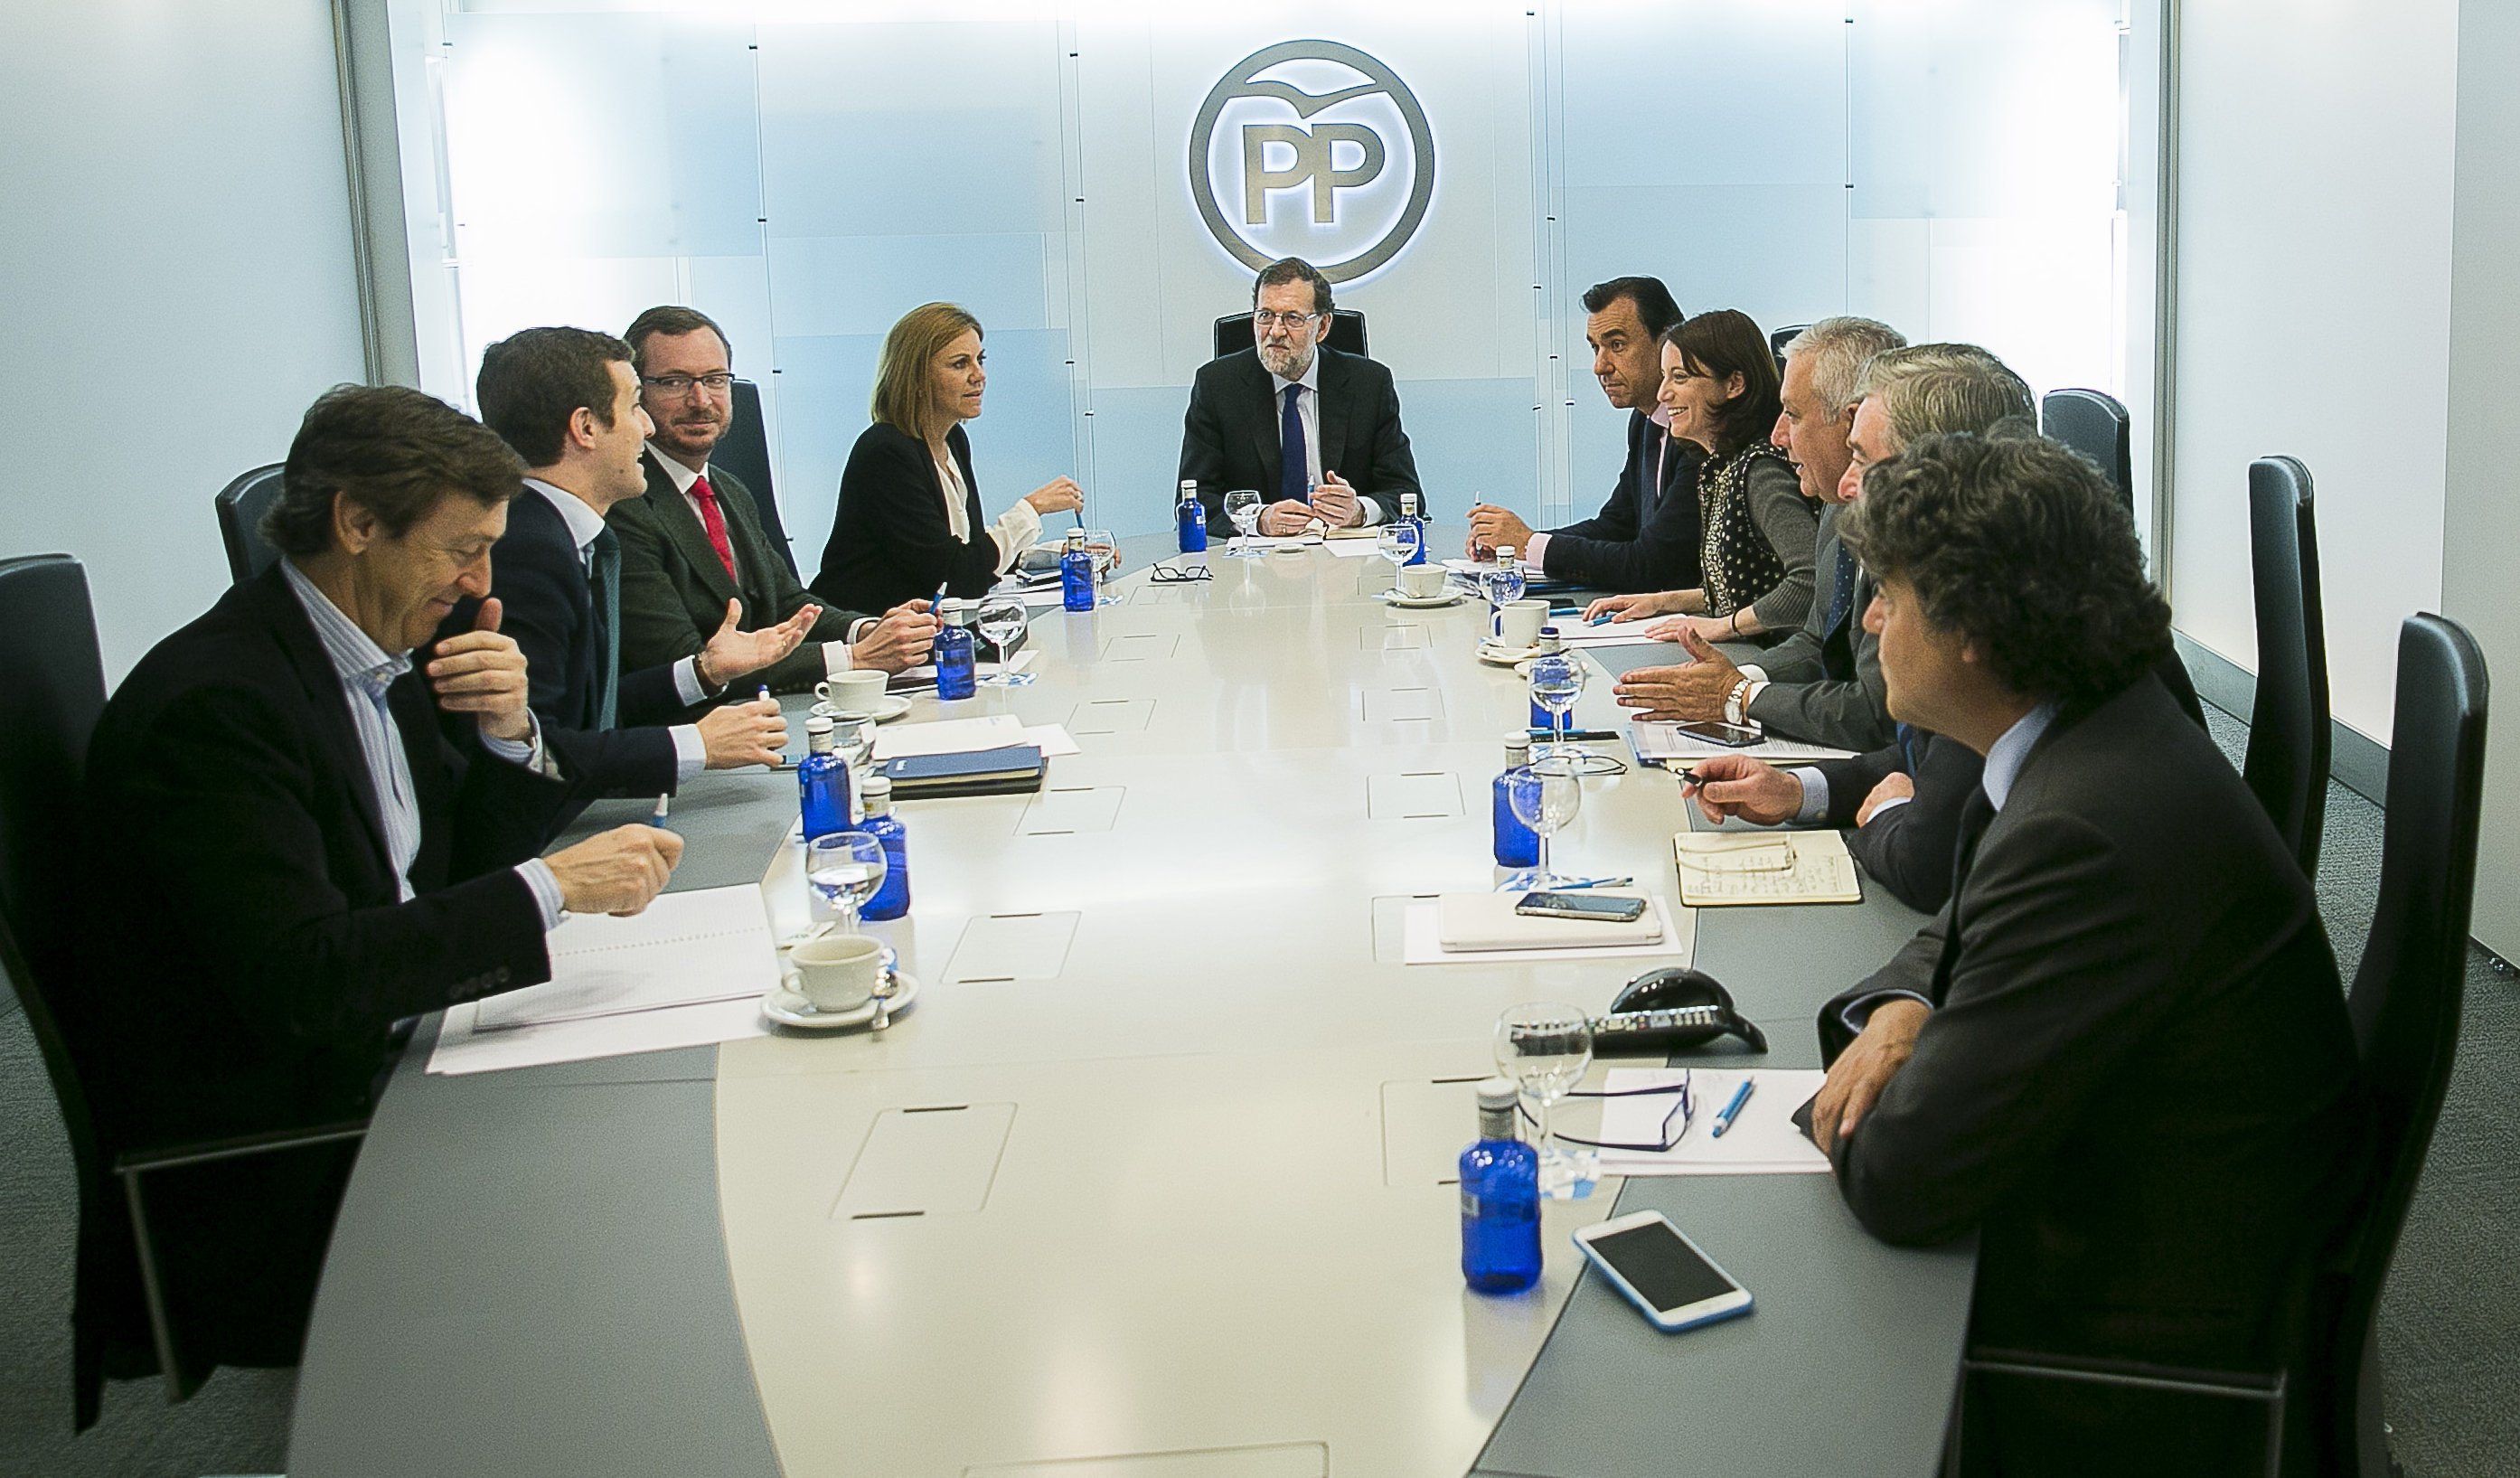 El PP vol ser el vot útil contra Podemos i la "ingovernabilitat"